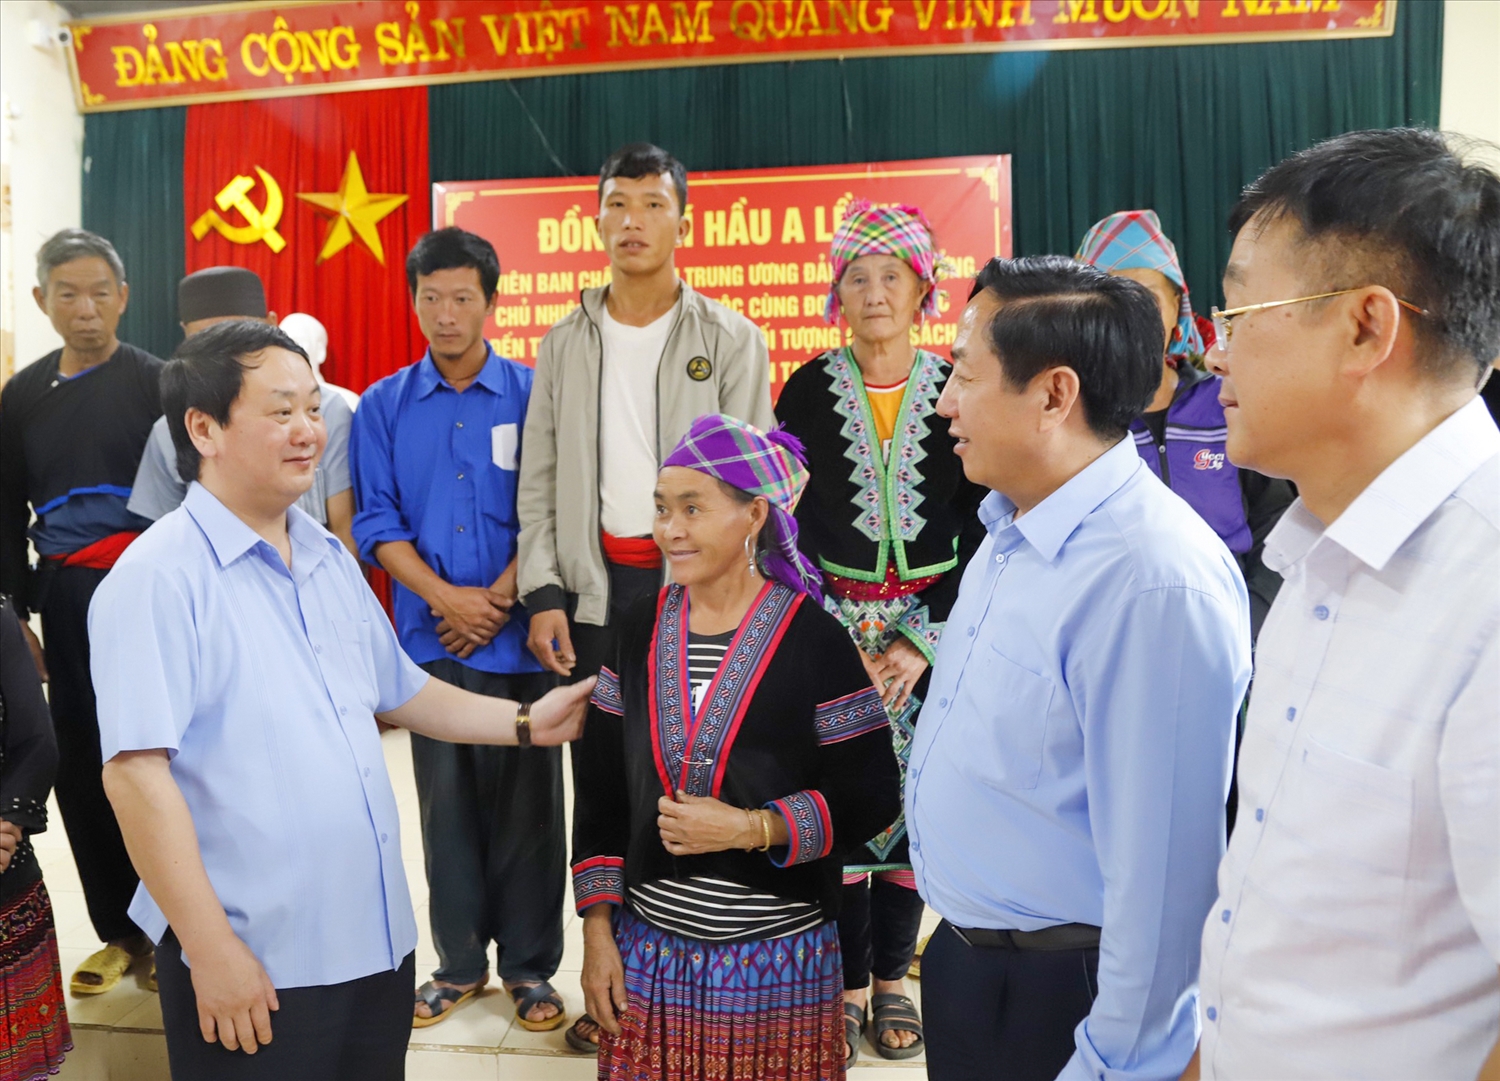 Bộ trưởng, Chủ nhiệm Uỷ ban Dân tộc Hầu A Lềnh trò chuyện với lãnh đạo huyện, xã và người dân xã Giang Ma